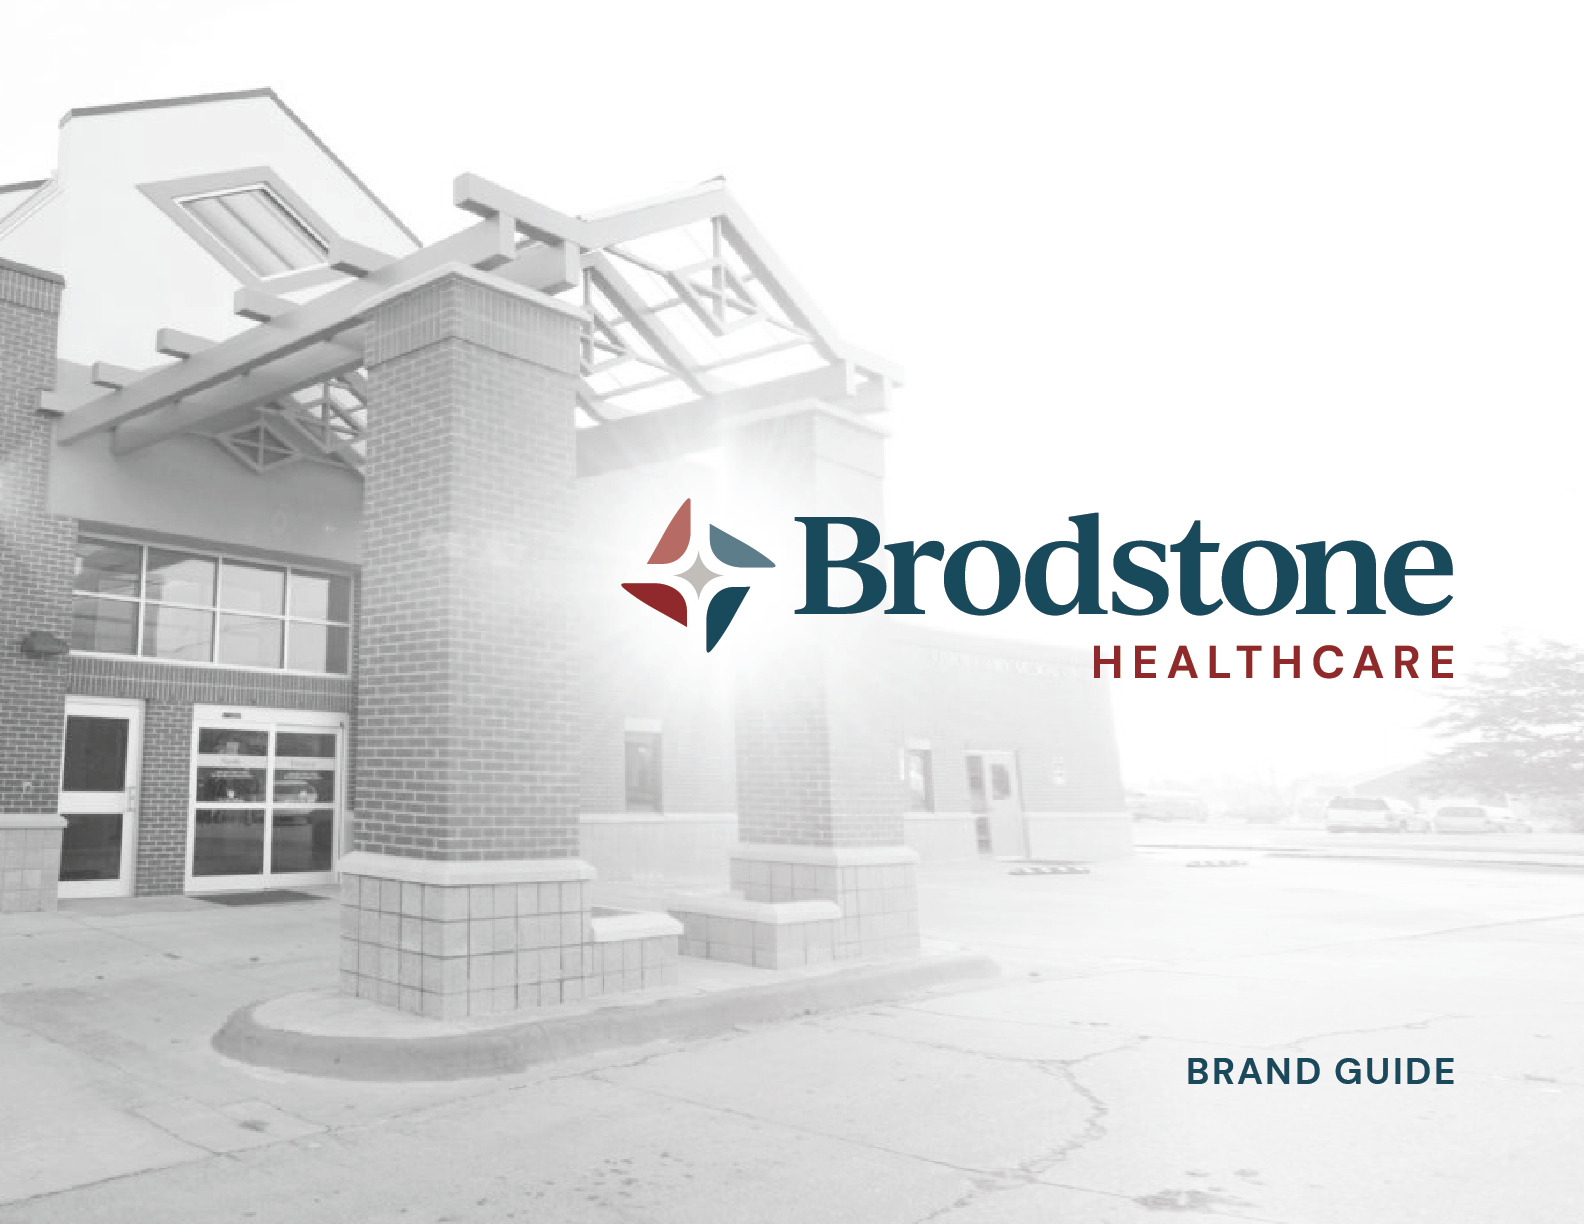 Brodstone Healthcare Brand Guide Cover